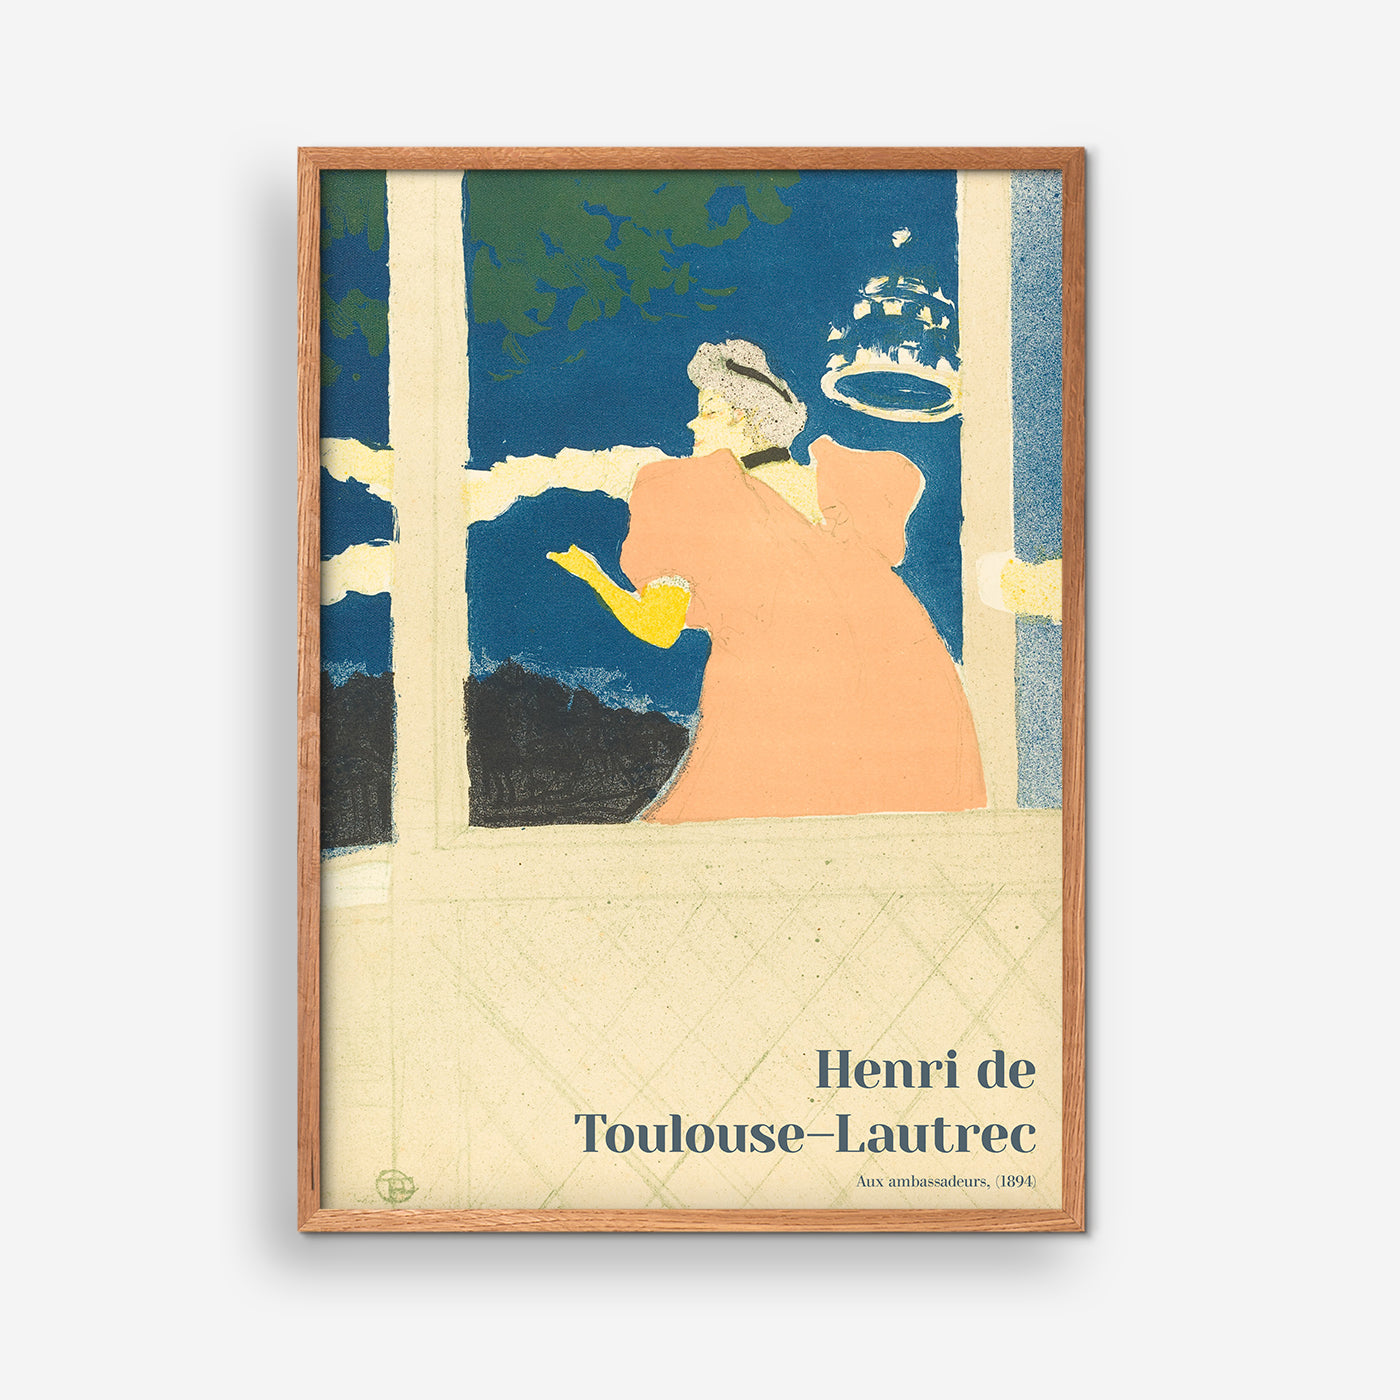 Hilfsbotschafter - Henri de Toulouse-Lautrec